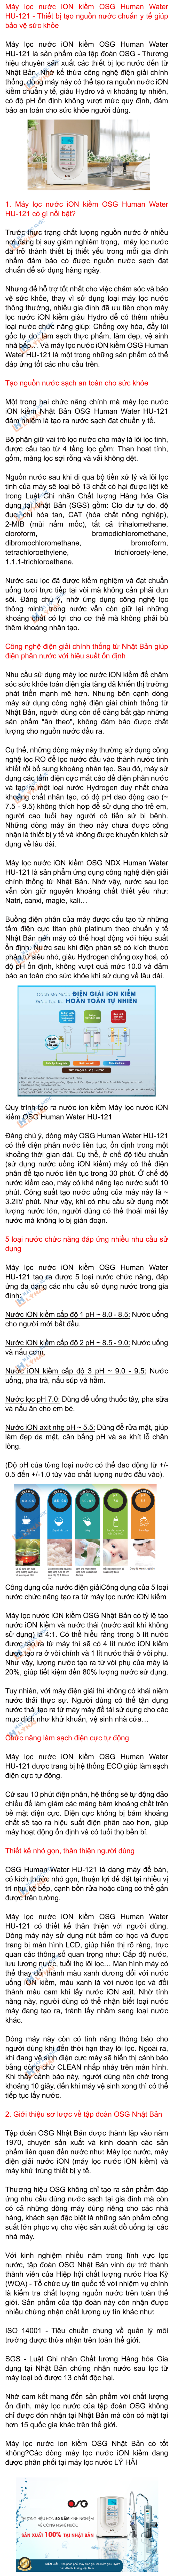 Máy lọc nước iON kiềm OSG Human Water HU-121